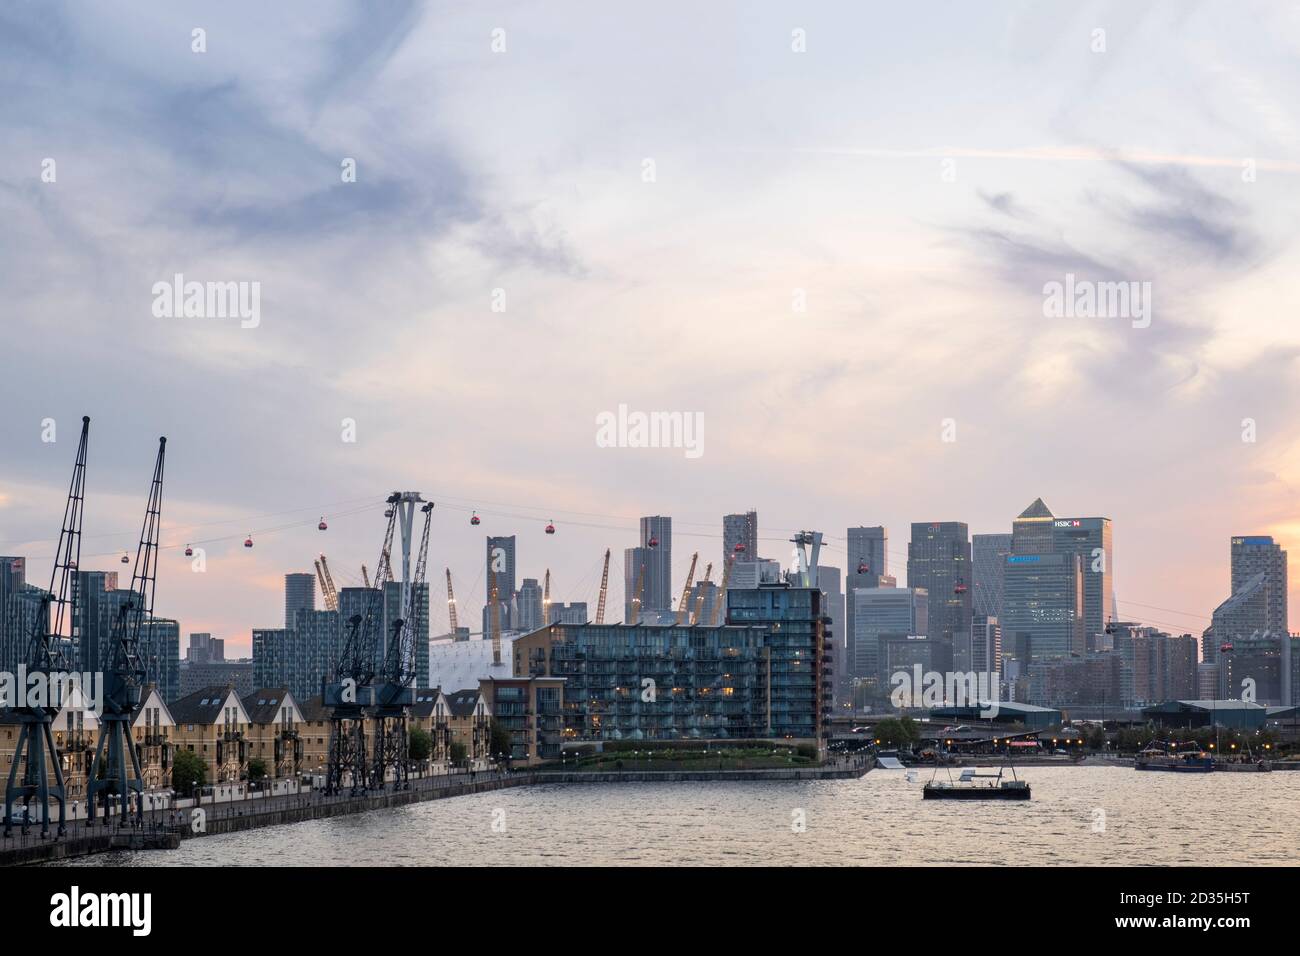 Royaume-Uni, Londres, Docklands. L'horizon du quartier des affaires de Canary Wharf Central à Londres, le téléphérique Emirates Airline, depuis Royal Victoria Dock, East End Banque D'Images